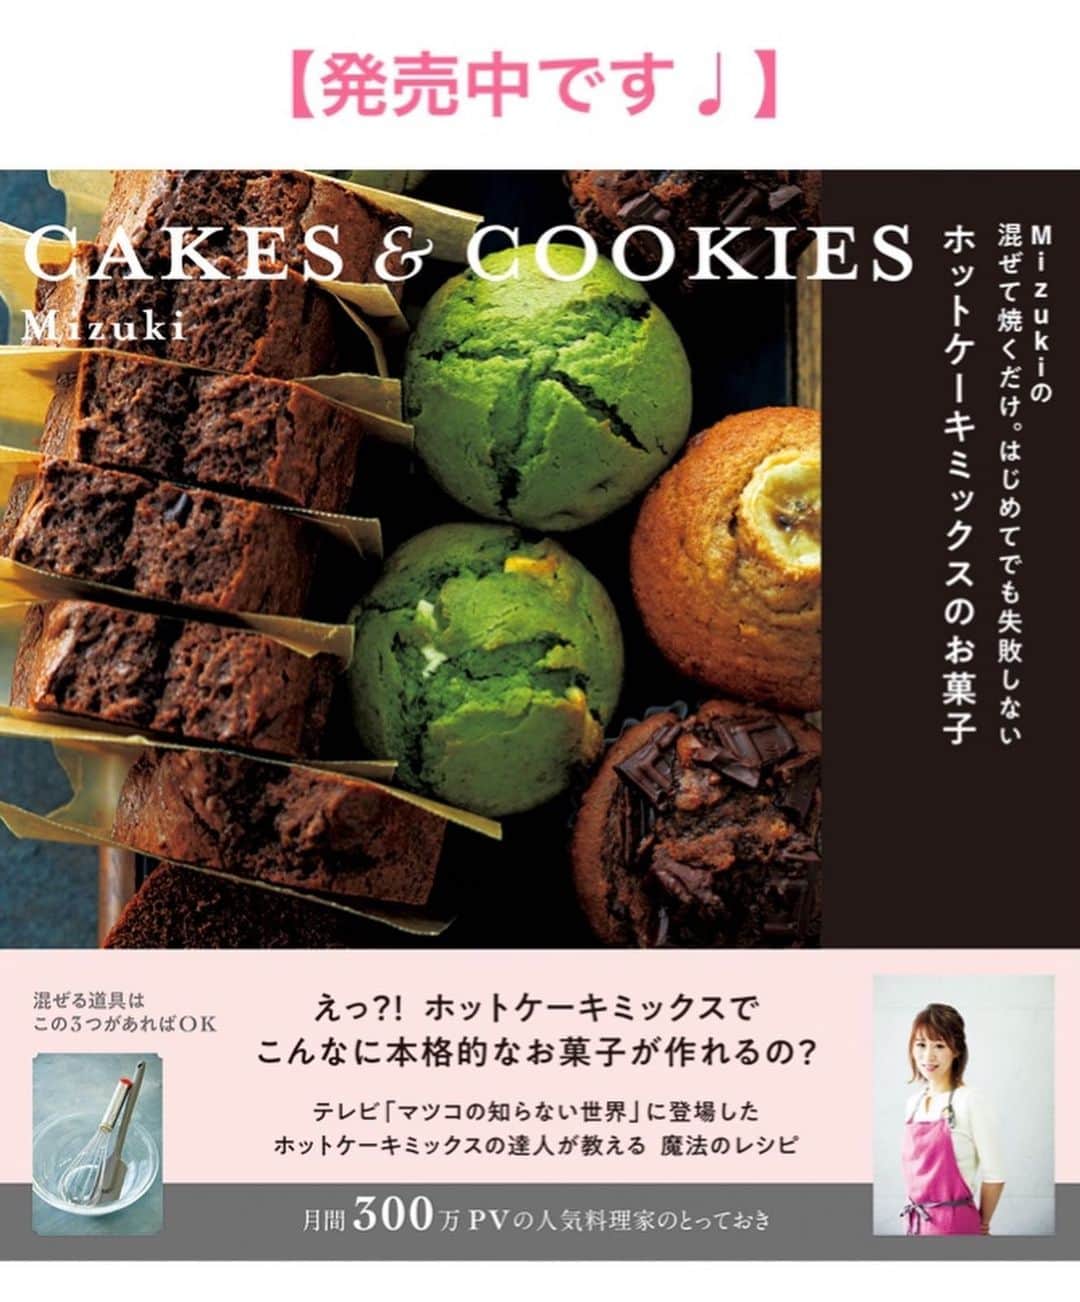 Mizuki【料理ブロガー・簡単レシピ】さんのインスタグラム写真 - (Mizuki【料理ブロガー・簡単レシピ】Instagram)「・﻿ 【レシピ】ーーーーーーーーーーーーーーーー﻿ ♡ポン酢de簡単♡鶏肉となすのさっぱり煮♡﻿ ーーーーーーーーーーーーーーーーーーーーー﻿ ﻿ ﻿ ﻿ おはようございます(*^^*)﻿ ﻿ 今日ご紹介させていただくのは﻿ 鶏肉となすのさっぱり煮♡﻿ 味付けはポン酢で失敗なし♩﻿ さっと炒めて煮るだけの﻿ 超簡単レシピです(*´艸`)﻿ ﻿ 鶏肉はとろんと柔らかく﻿ なすはジューシーに仕上がりますよ♡﻿ フライパンひとつでできるので﻿ よかったらお試し下さいね(*^^*)﻿ ﻿ ﻿ ﻿ ーーーーーーーーーーーーーーーーーーーー﻿ 【2人分】﻿ 鶏もも肉...1枚(250g)﻿ なす...2本﻿ 塩こしょう...少々﻿ 片栗粉...適量﻿ ごま油...大1.5﻿ ●水・ポン酢...各50ml﻿ ●みりん...大2﻿ (あれば)万能ねぎ...適量﻿ ﻿ 1.なすは一口大の乱切りにし、水に3分晒して水気を切る。鶏肉は3cm大に切り、塩こしょうを振って片栗粉をまぶす。﻿ 2.フライパンにごま油を入れて中火で熱し、1を炒める。鶏肉の色が変わったら●を加え、たまに混ぜながら5〜6分煮る。﻿ 3.器に盛り、小口切りにしたねぎをトッピングする。﻿ ーーーーーーーーーーーーーーーーーーーー﻿ ﻿ ﻿ ﻿ 《ポイント》﻿ ♦︎鶏むね肉でも作れます♩全体をフォークで刺し、1cm厚さの削ぎ切りにして下さい♩﻿ ﻿ ﻿ ﻿ ﻿ ﻿ ﻿ ﻿ 🔻入荷しました🔻﻿ ストーリーにリンク貼っています🙇‍♀️﻿ ＿＿＿＿＿＿＿＿＿＿＿＿＿＿＿＿＿＿＿﻿ 📕\ \ 新刊発売中 / /📕﻿ 簡単・時短！ 毎日のごはんがラクになる﻿ ✨🦋 【 #Mizukiの今どき和食 】🦋✨﻿ ＿＿＿＿＿＿＿＿＿＿＿＿＿＿＿＿＿＿＿﻿ ﻿ なるべく少ない材料で﻿ 手間も時間も省きながら﻿ 簡単にできるおいしい和食レシピ♩﻿ 簡単に失敗なくマスターできる一冊で﻿ もっと気軽に、カジュアルに﻿ 和食を楽しんで下さいね(*^^*)﻿ ﻿ ﻿ ーーー ⭐️PART.1 メインおかず ⭐️ーーー﻿ 素材別にレシピをご紹介しています♩﻿ 和食の定番から新定番まで﻿ どれも押さえておきたいメニューばかり。﻿ 肉じゃがはフライパンで！焼き豚はレンジで！﻿ ぶり大根は切り身を使って手軽に作ります♩﻿ ﻿ ーーー ☘️PART.2 サブおかず ☘️ーーー﻿ 年中手に入るお手頃野菜と﻿ 乾物や大豆、こんにゃくなどを使った﻿ 副菜レシピをたっぷり掲載！！﻿ 普段SNSではメインおかずばかりなので﻿ 本では副菜にも力を入れています(*^^*)﻿ ﻿ ーーー 🌸PART.3 ごはんと汁物 🌸ーーー﻿ ささっと作れる丼と麺、﻿ みんなで食べたいいなり寿司や﻿ 手巻きごはんもご紹介！﻿ 複数の炊き込みごはんと﻿ 味噌汁&和風スープも盛りだくさん！﻿ ﻿ ﻿ 各レシピのポイントは﻿ 【写真付きで丁寧に解説】﻿ 副菜レシピもたっぷりなので﻿ 【メインページに副菜メモもつけました】﻿ ＊このメインにはこの副菜が合いますよ〜﻿ という献立の提案です(*^^*)﻿ 【その他コラムも充実】﻿ 全127品中ほぼ全て﻿ 【本だけのレシピです！】﻿ ＿＿＿＿＿＿＿＿＿＿＿＿＿＿＿＿＿＿＿﻿ ﻿ ﻿ ﻿ ﻿ ﻿ ＿＿＿＿＿＿＿＿＿＿＿＿＿＿＿＿＿﻿ 🎀発売中🎀﻿ 【#ホットケーキミックスのお菓子 】﻿ ﻿ 一冊まるっとホケミスイーツ♩﻿ 普段のおやつから﻿ 特別な日にも使えるレシピを﻿ この一冊に詰め込みました(*^^*)﻿ ホットケーキミックスを使えば﻿ 簡単に本格的なお菓子が作れますよ♡﻿ ＿＿＿＿＿＿＿＿＿＿＿＿＿＿＿＿＿﻿ ﻿ ⭐️ストーリー、ハイライト、プロフ画面に﻿ 本のURLを貼らせていただいております♩﻿ →(@mizuki_31cafe )﻿ ﻿ ﻿ ﻿ ﻿ #さっぱり煮#ポン酢#ポン酢煮#鶏肉#なす#うちで過ごそう#おうち時間#Mizuki#簡単レシピ#時短レシピ#節約レシピ#料理#レシピ#フーディーテーブル#マカロニメイト#おうちごはん#デリスタグラマー#料理好きな人と繋がりたい#おうちごはん#うちるフォト#lover#foodpic#follow#cooking#recipe#lin_stagrammer#stayhome#鶏肉となすのさっぱり煮m」6月5日 6時58分 - mizuki_31cafe